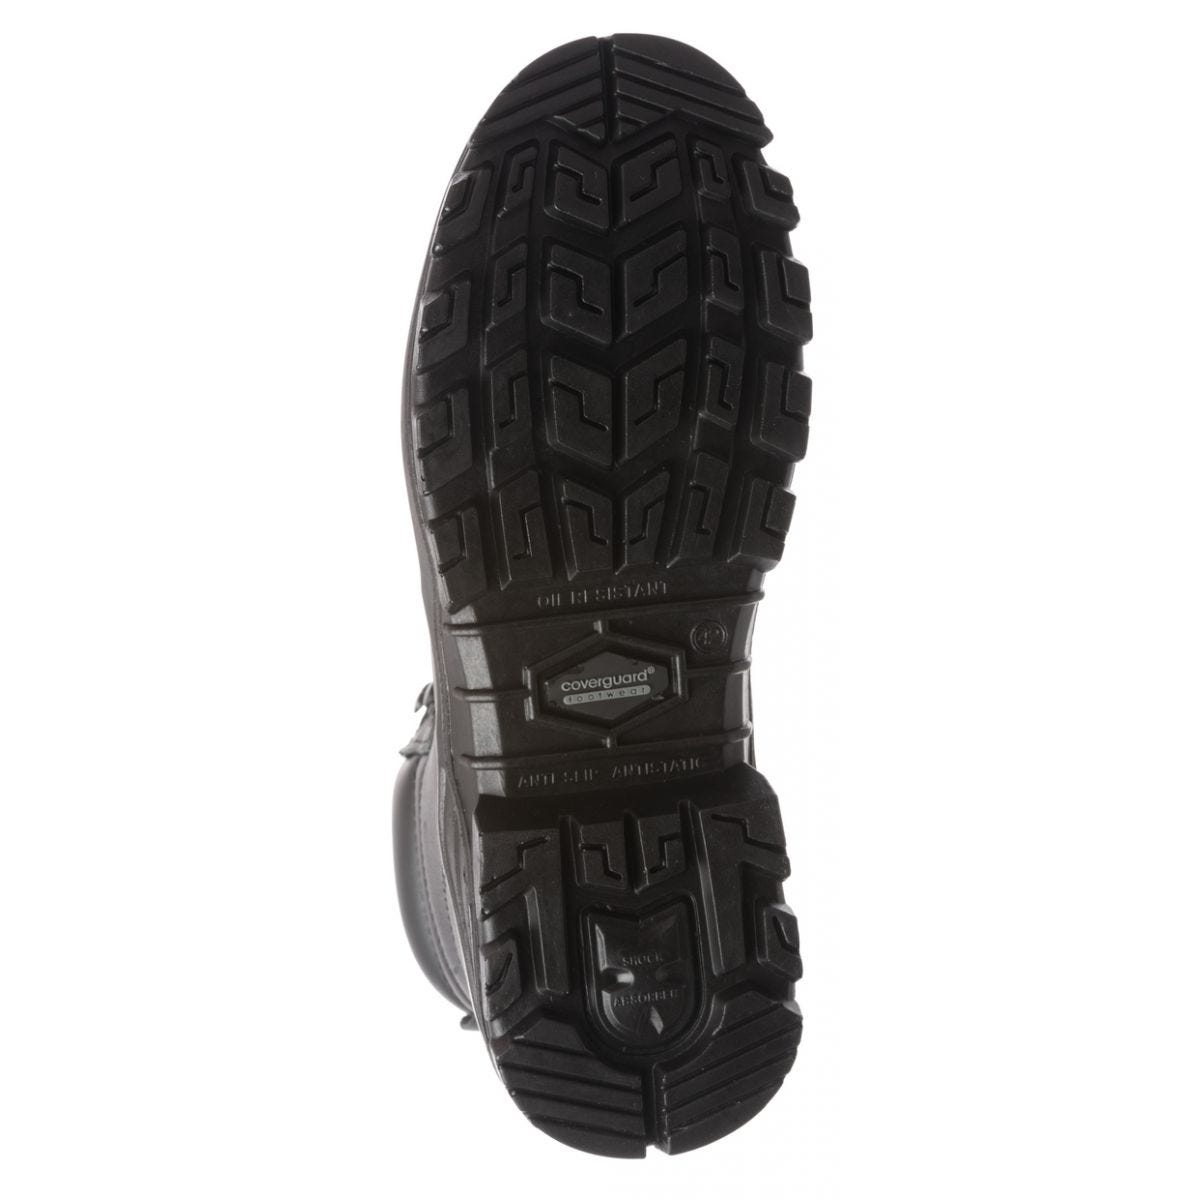 Chaussure de sécurité AVENTURINE S3 haute noir composite - COVERGUARD - Taille 43 1